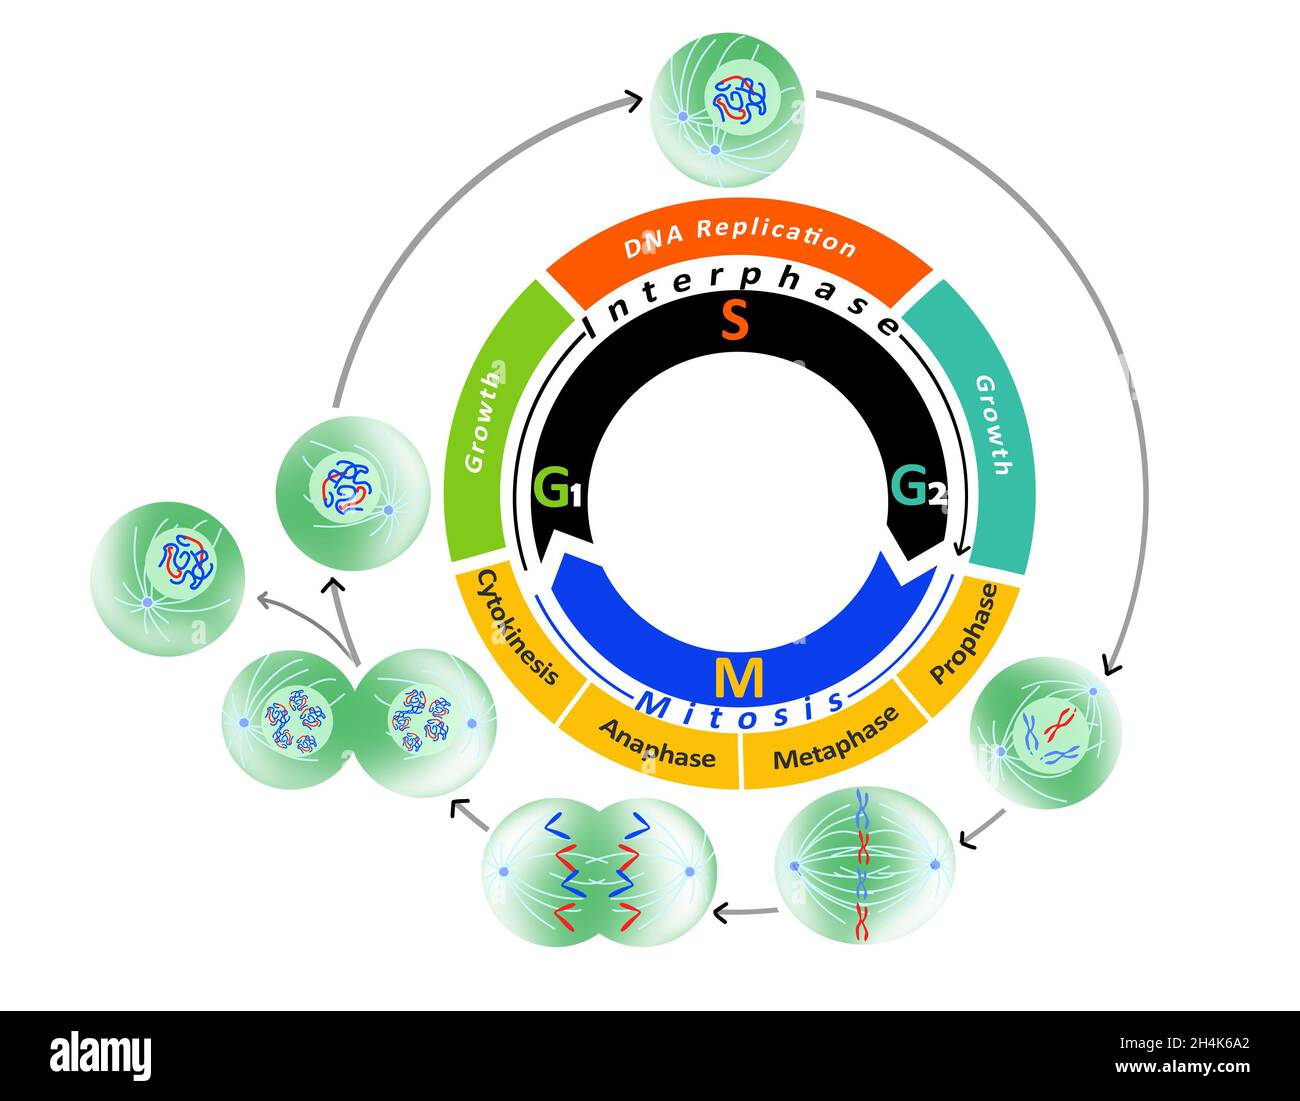 Diagramma del ciclo cellulare, fasi del ciclo cellulare e mitosi. (Replicazione del DNA). Illustrazione didattica su sfondo bianco. Foto Stock